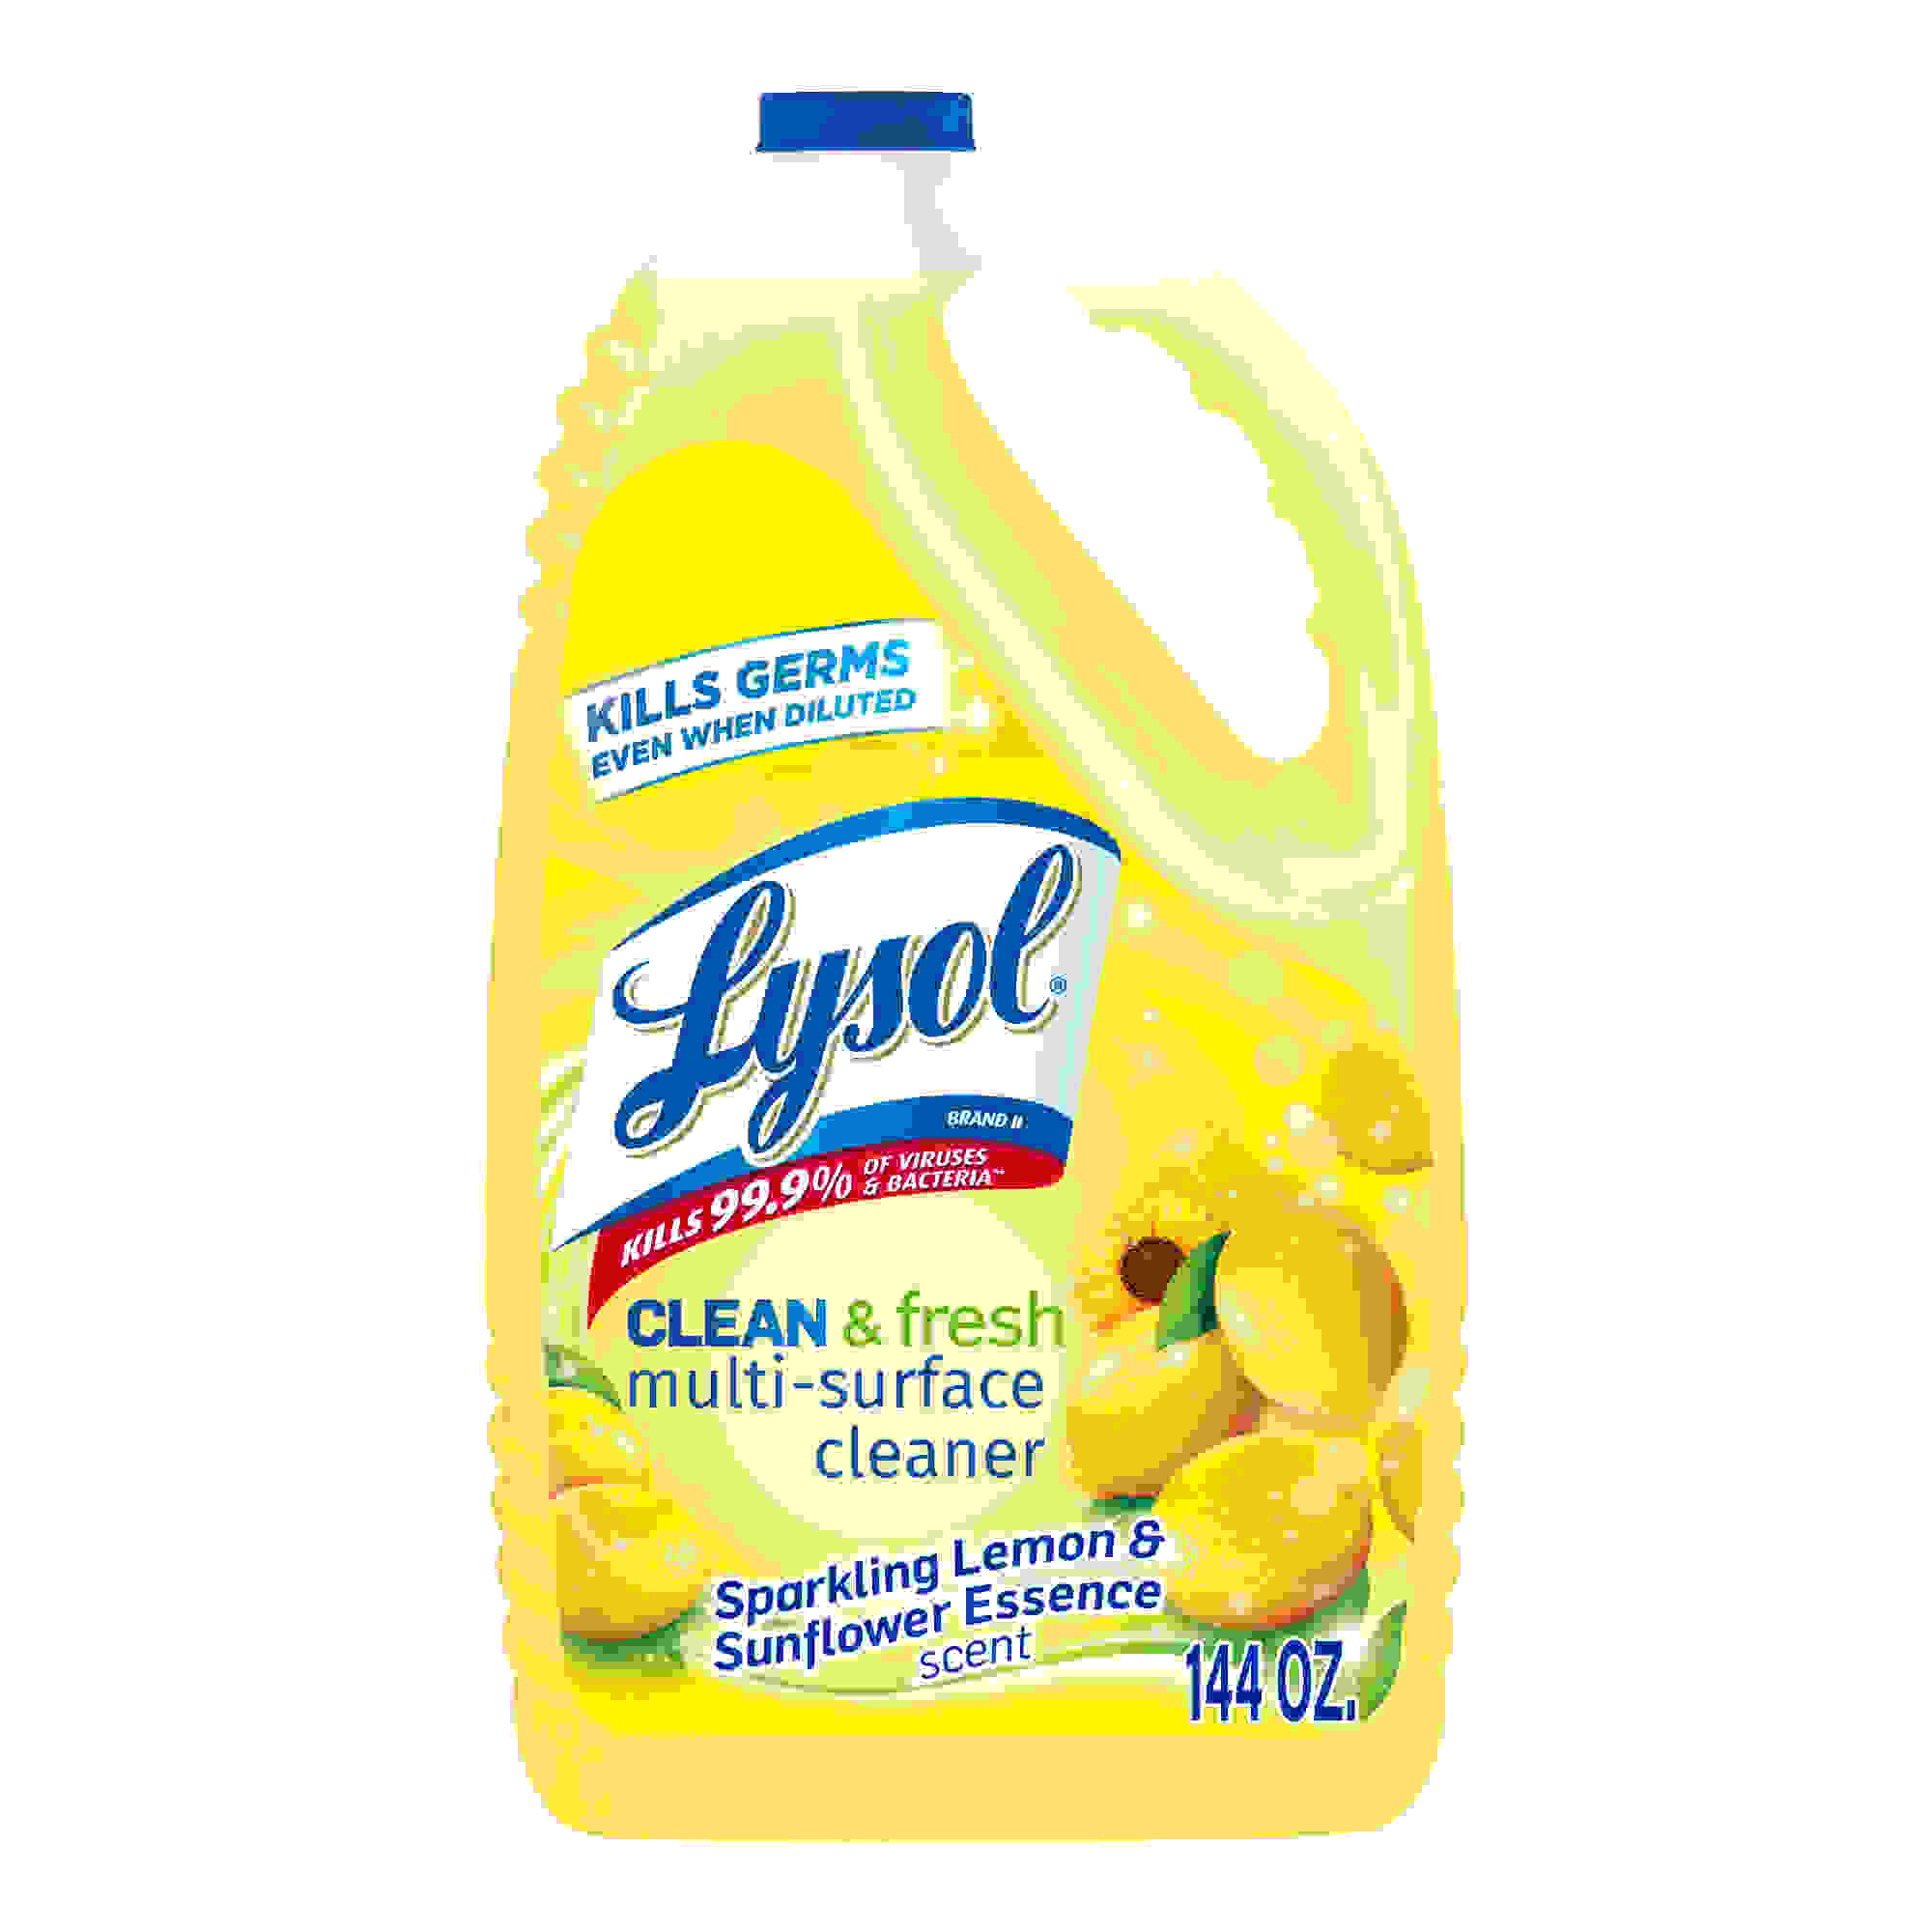 Clean & Fresh MultiSurface Cleaner, Sparkling Lemon/Sunflower,144oz Bottle,4/Case